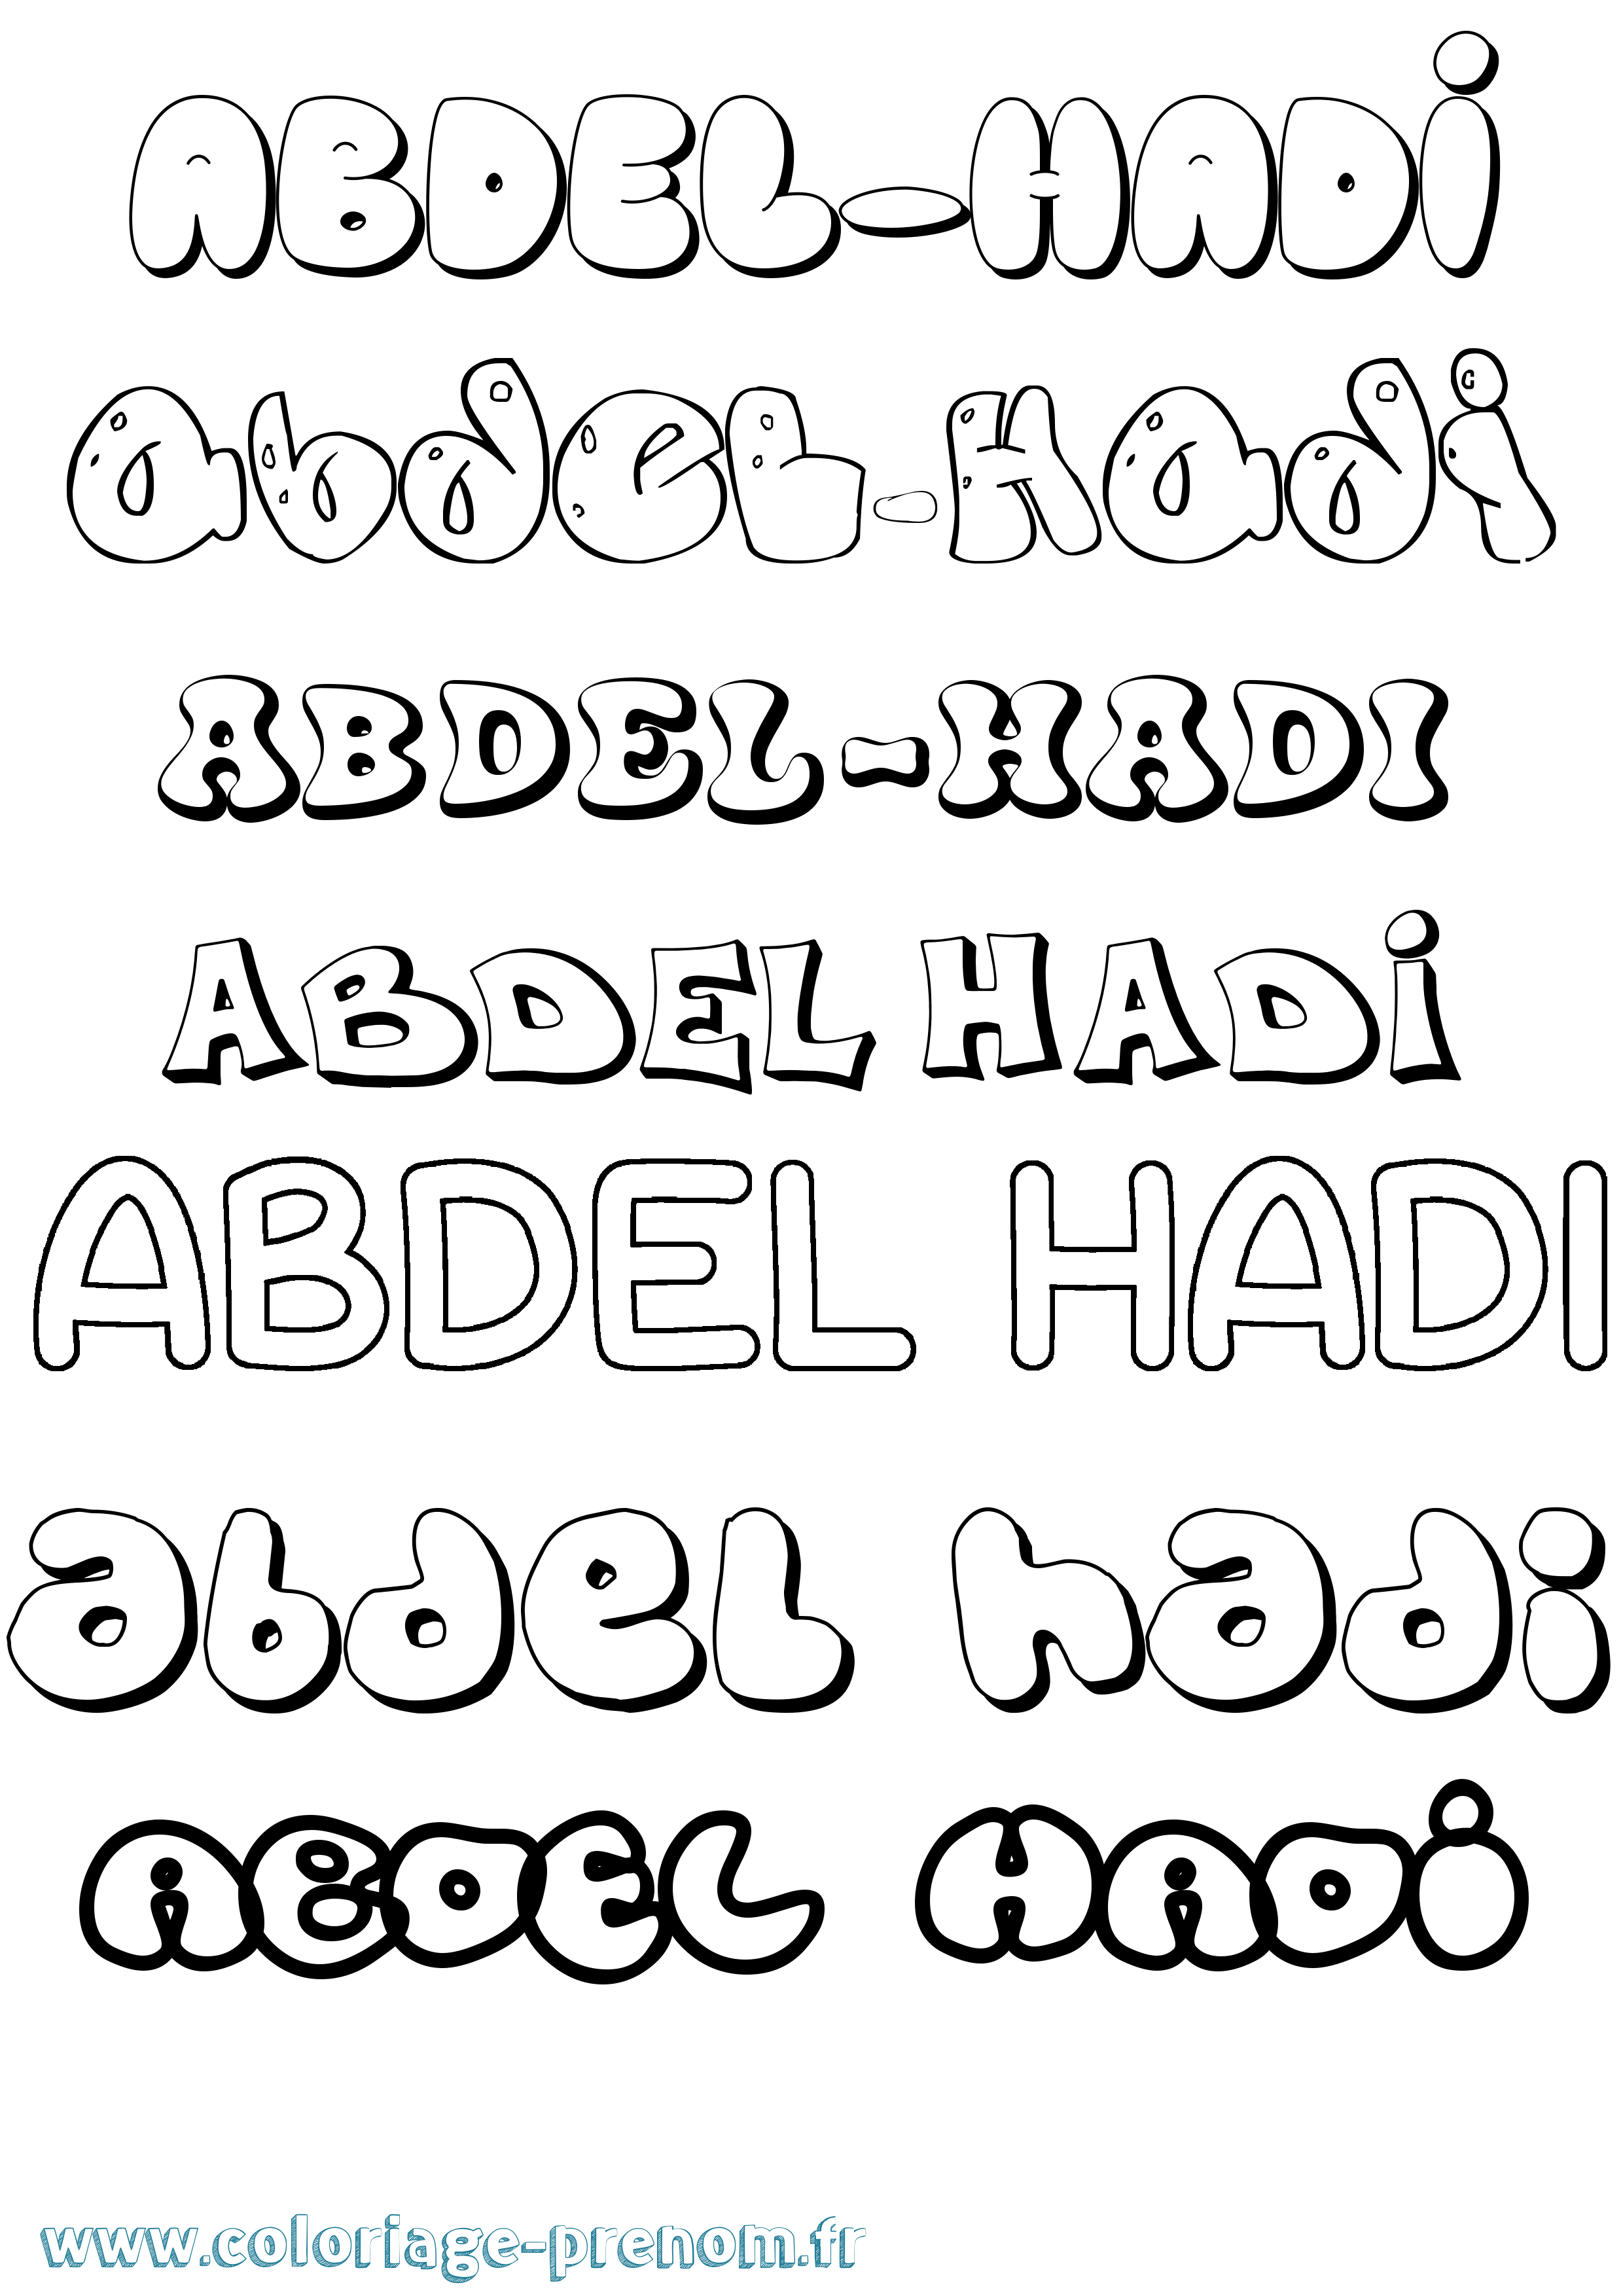 Coloriage prénom Abdel-Hadi Bubble